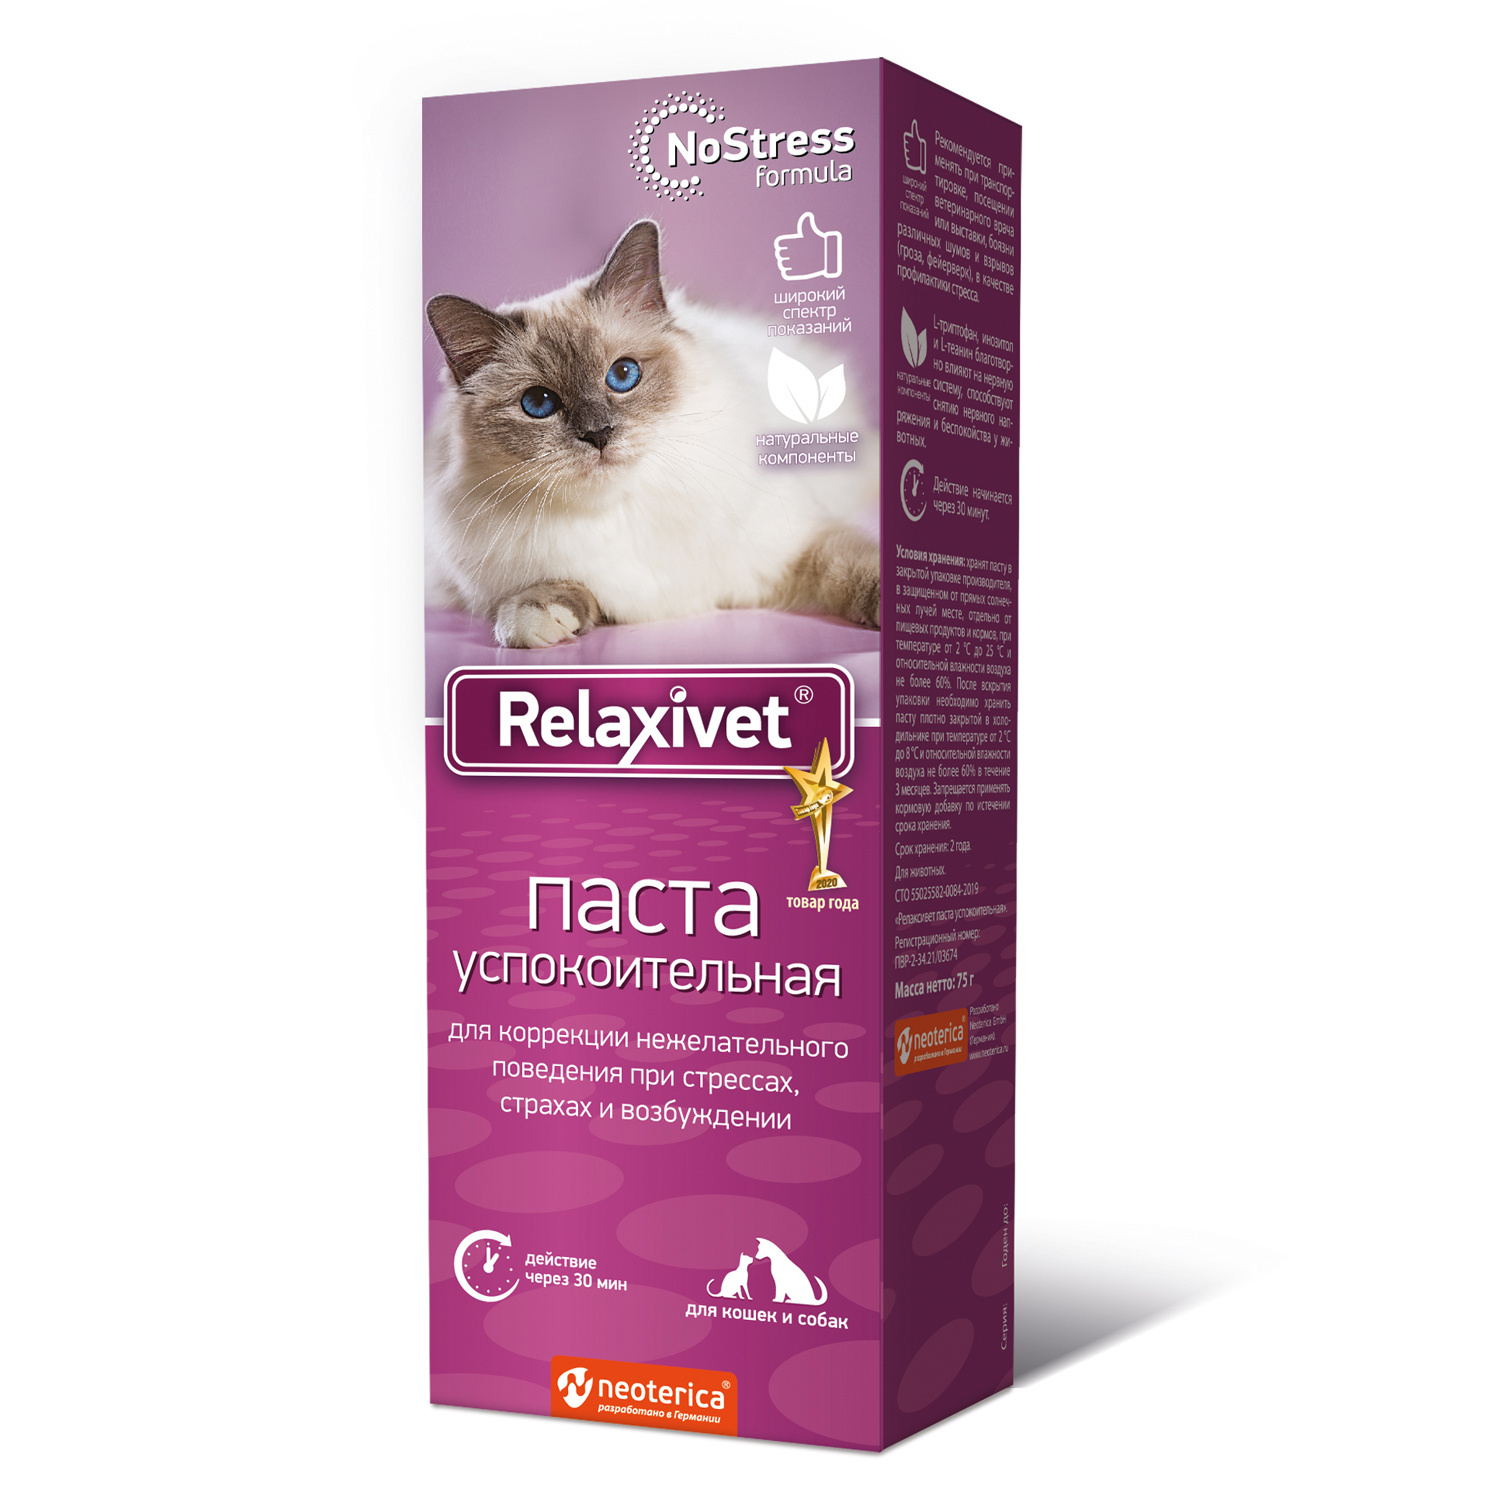 relaxivet жидкость успокоительная для кошек 45мл Relaxivet Relaxivet паста успокоительная, 75 г (95 г)